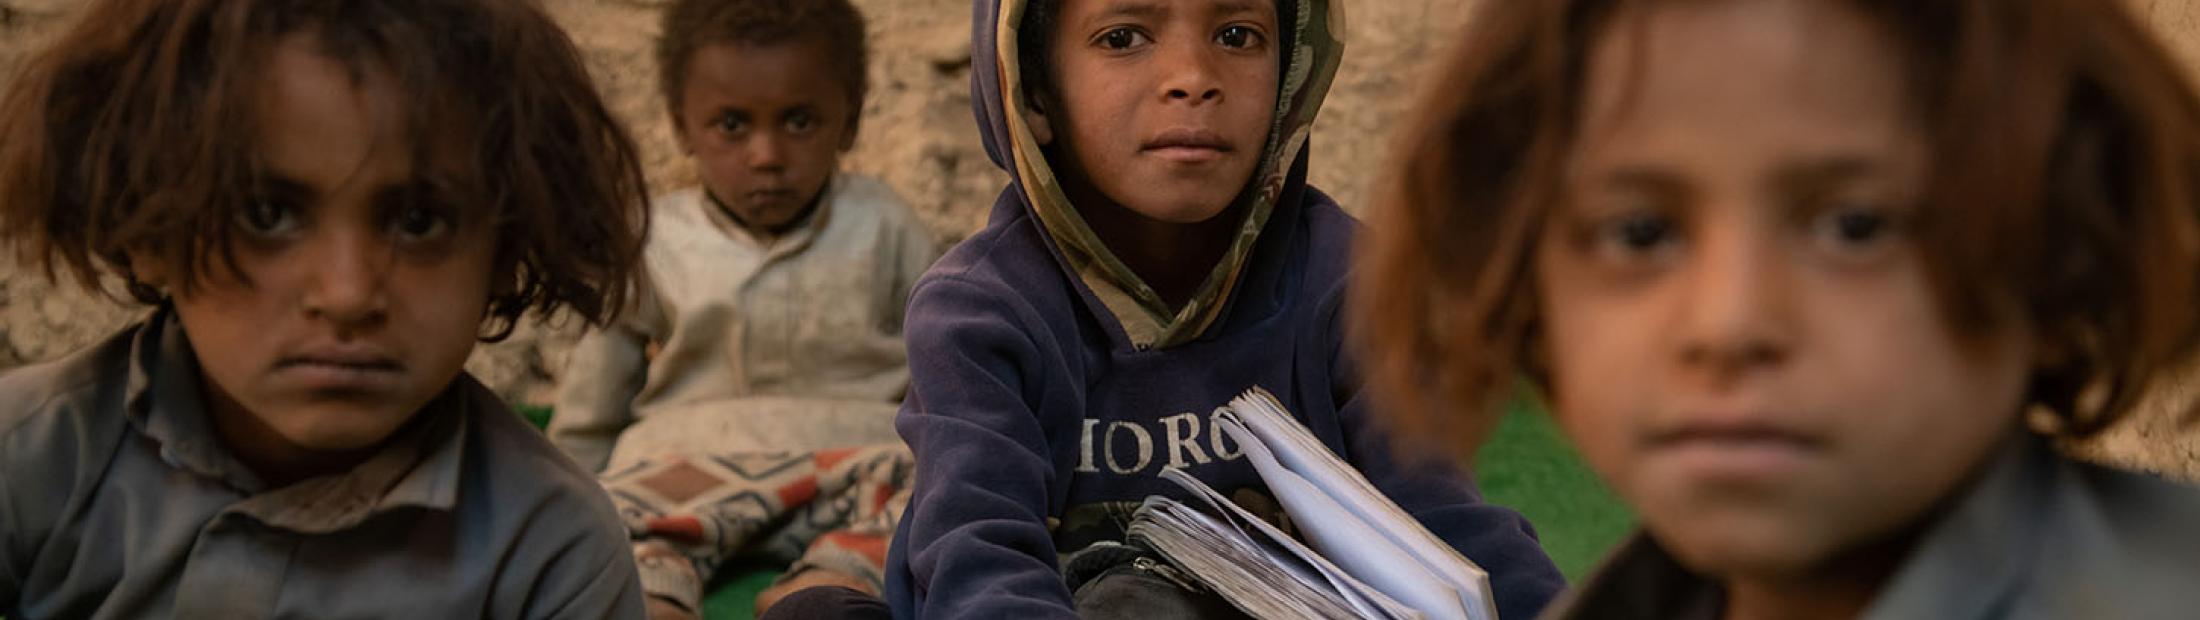 Siete años de guerra en Yemen: un desastre humanitario